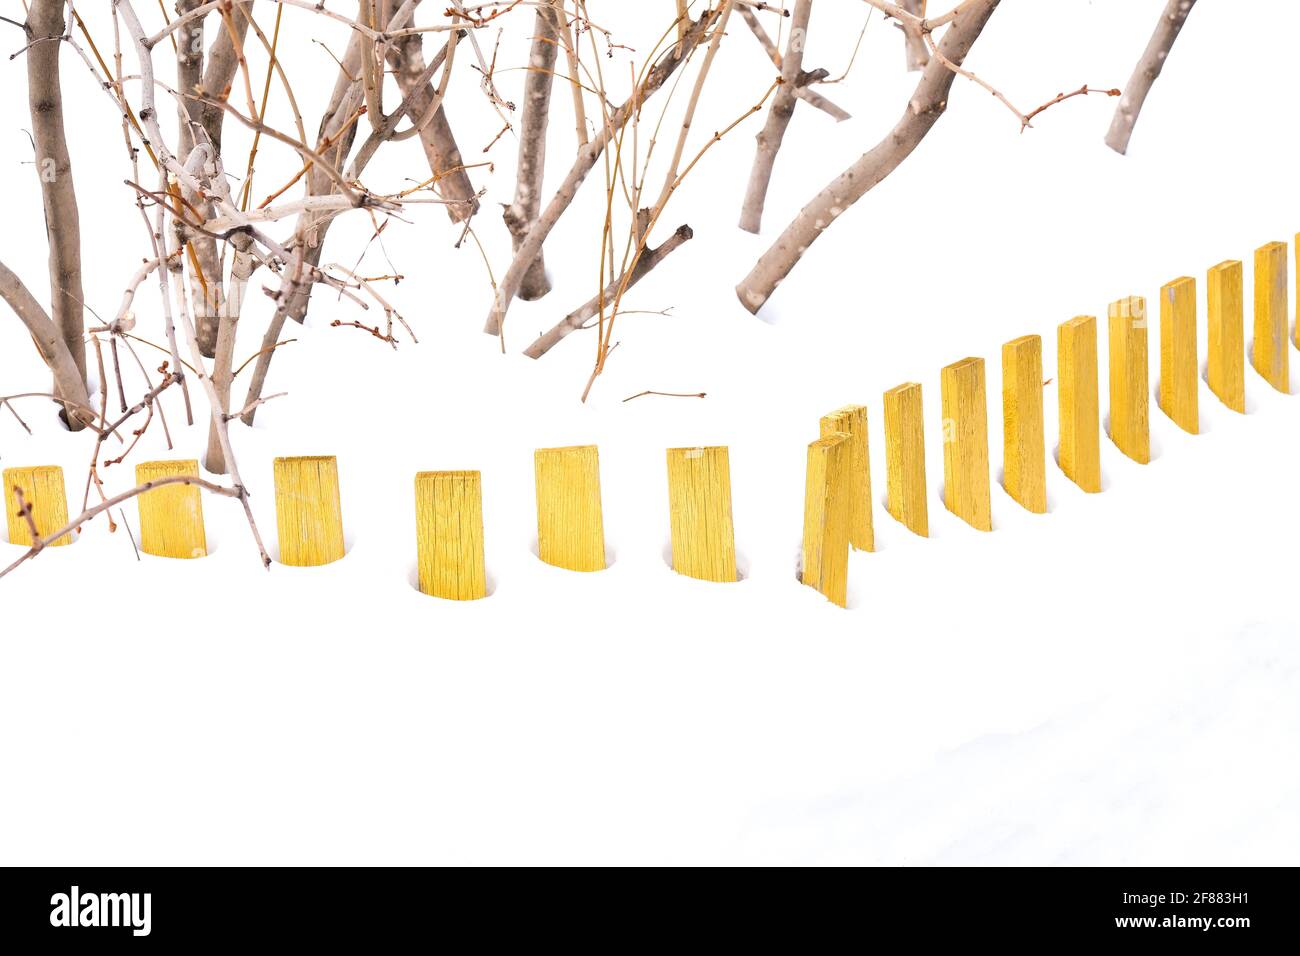 Recinzione bassa in legno giallo nella neve. Le boccole lilla sono visibili. Foto Stock